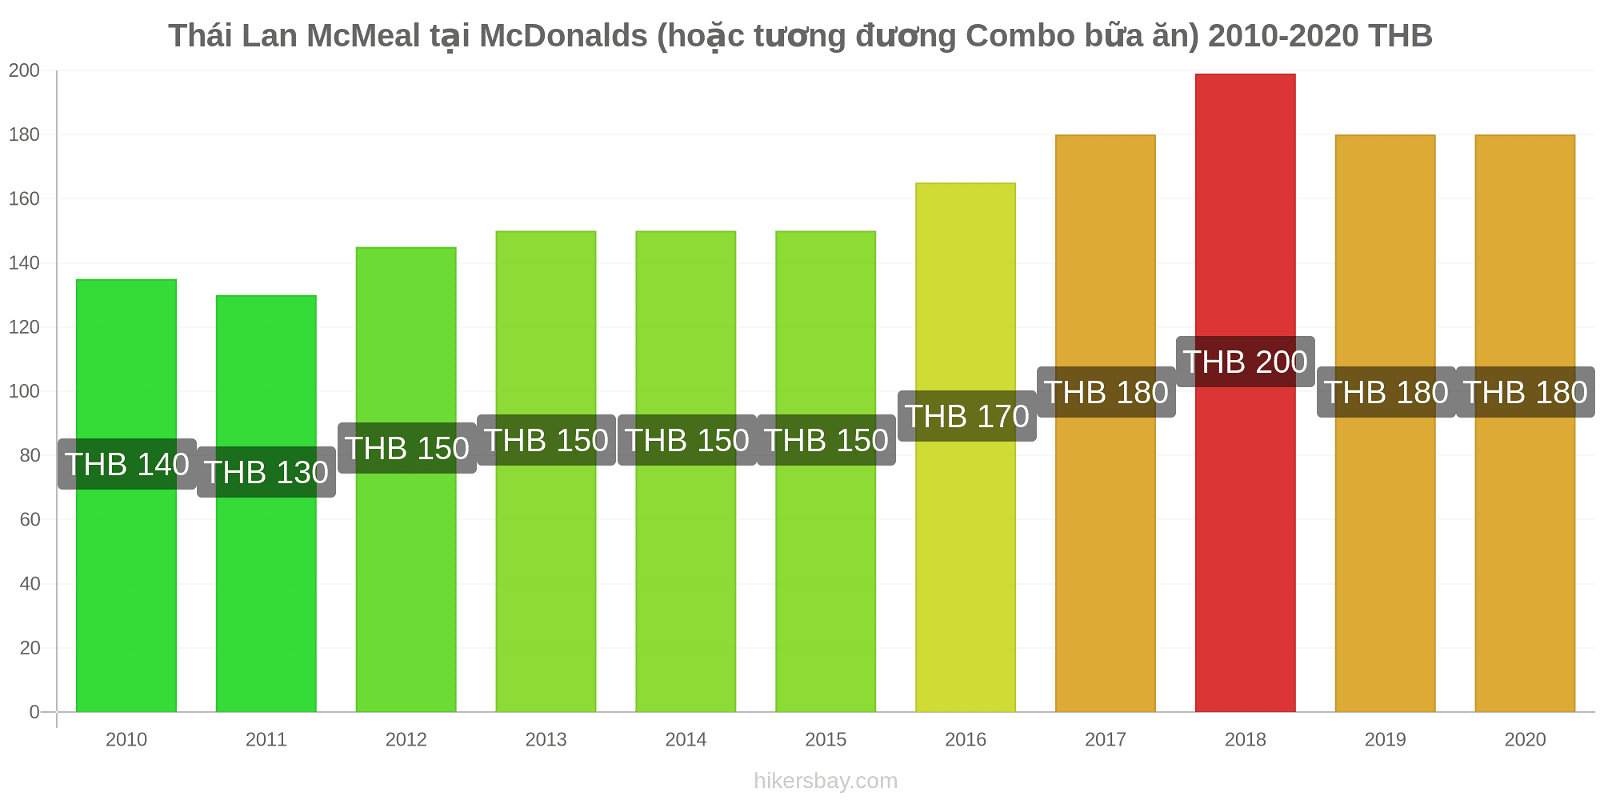 Thái Lan thay đổi giá McMeal tại McDonalds (hoặc tương đương Combo bữa ăn) hikersbay.com